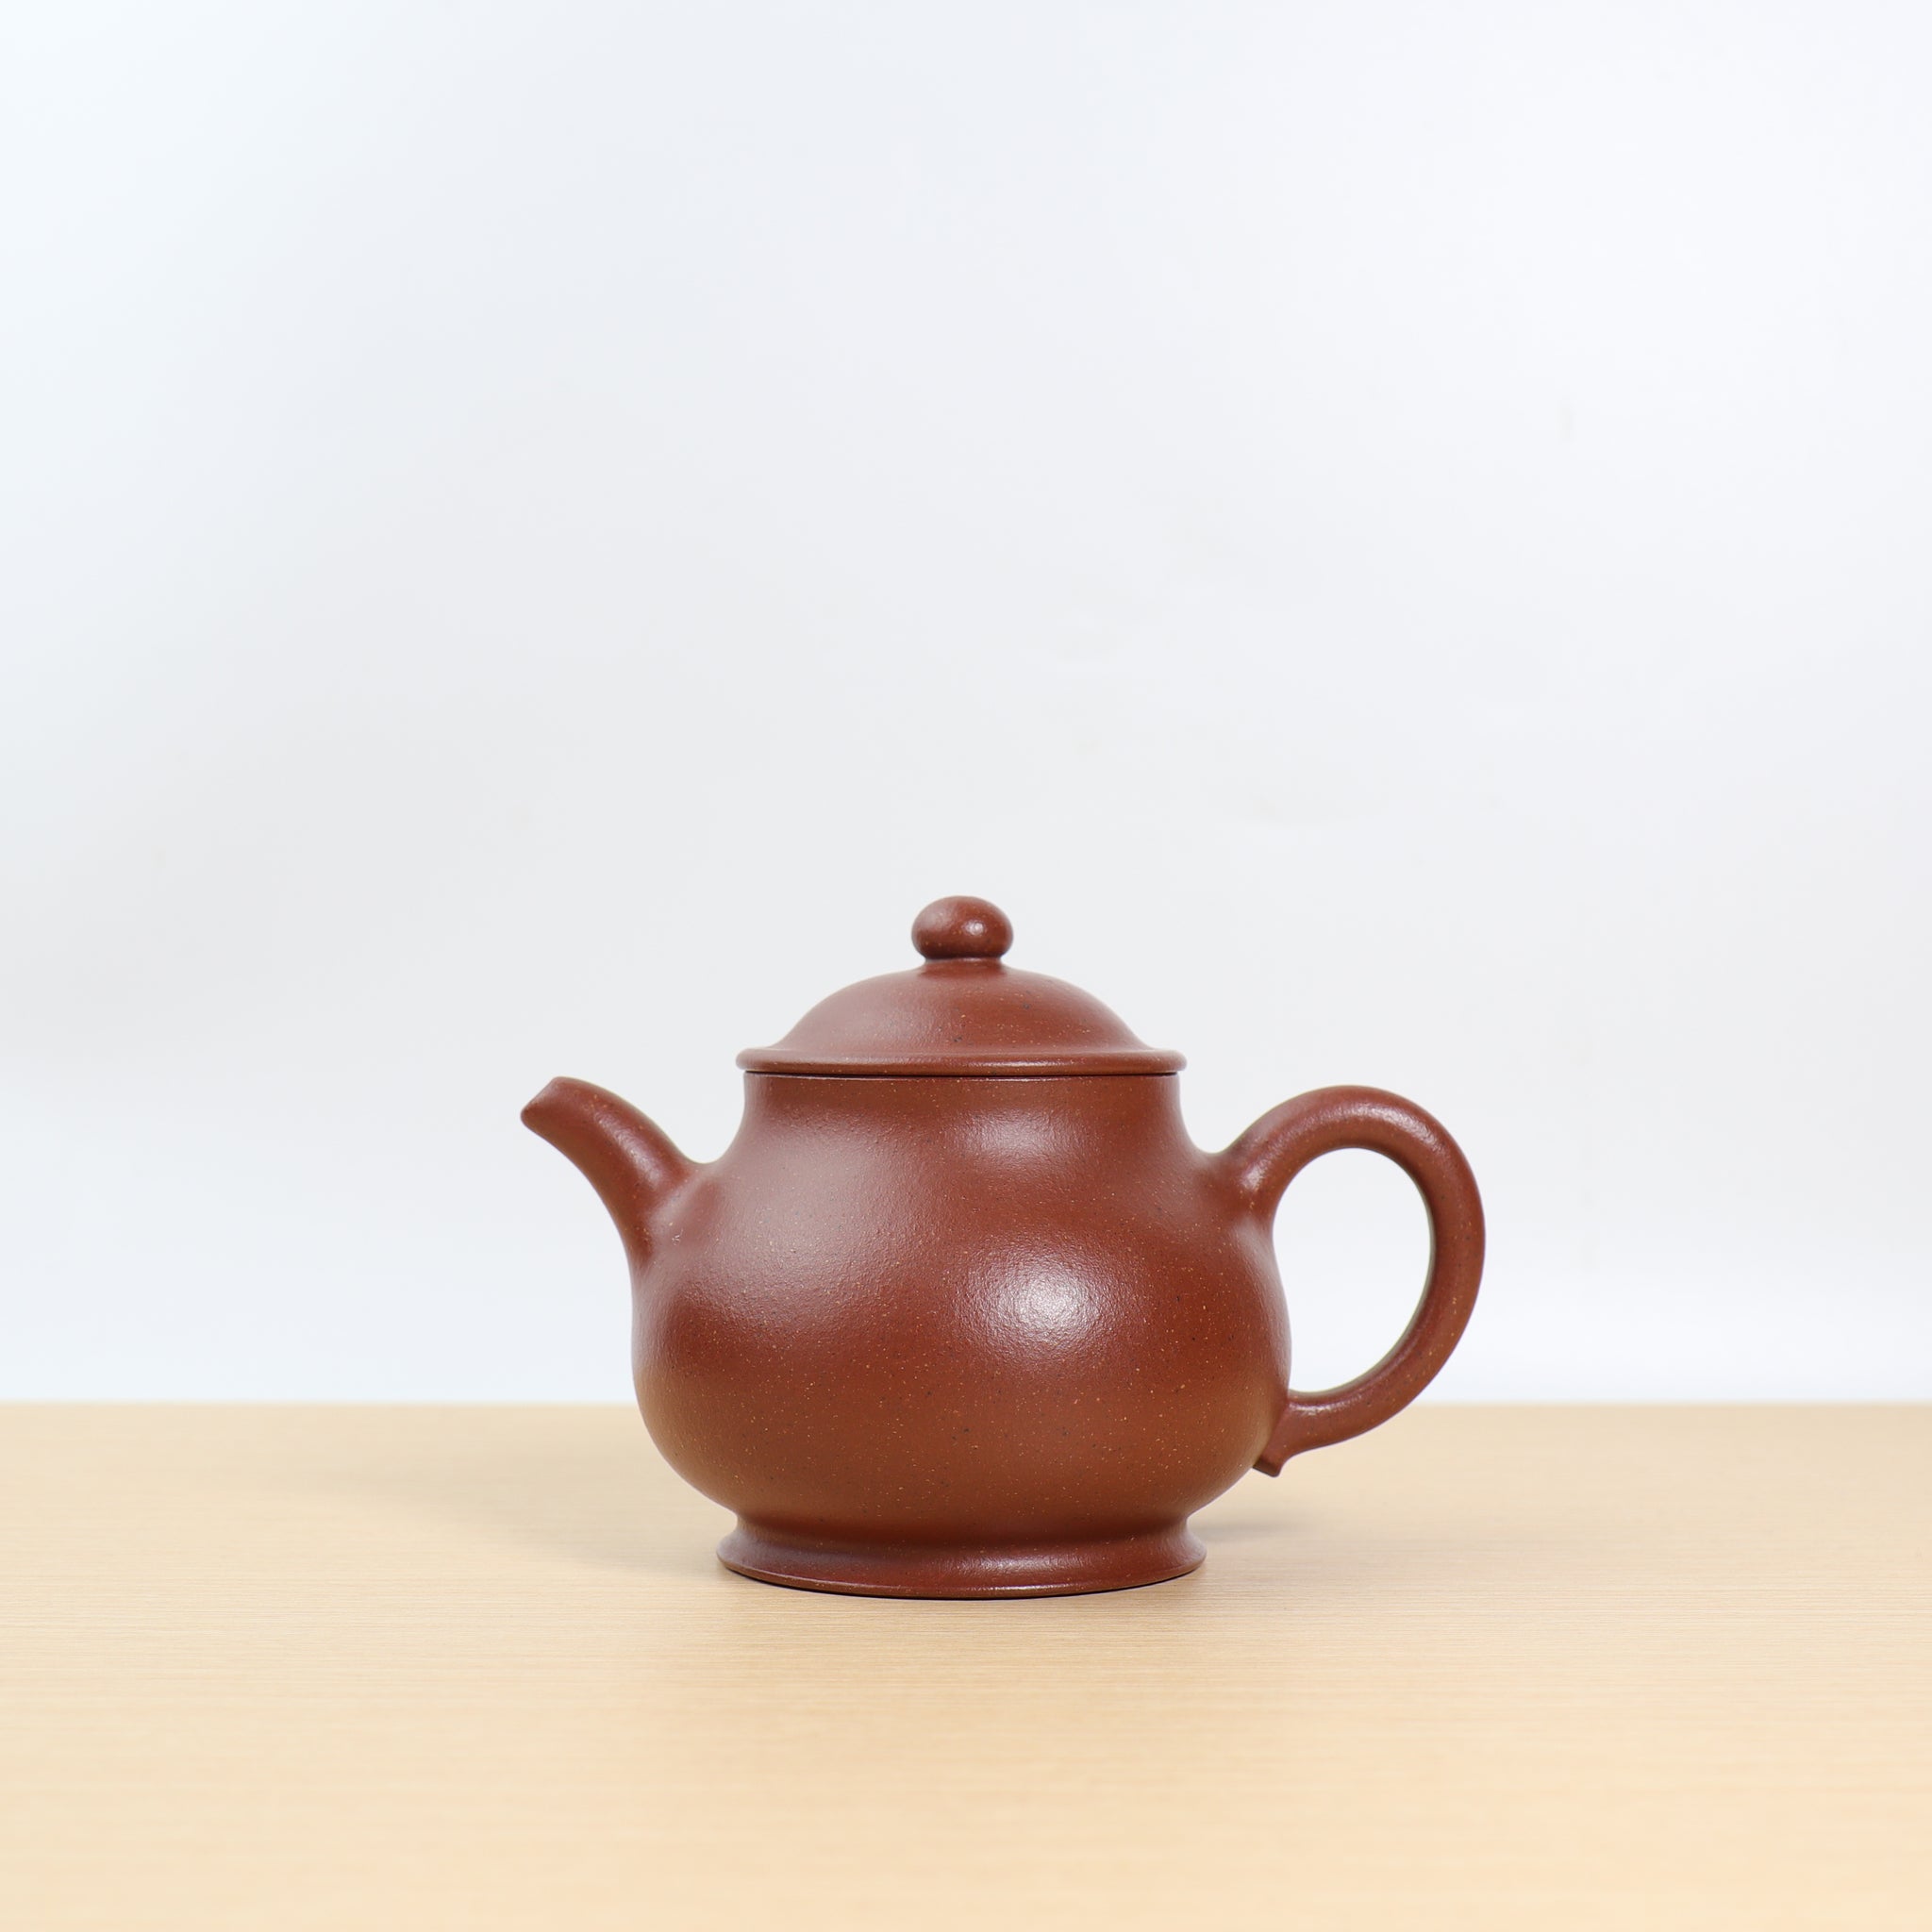 茶壺 - コレクション